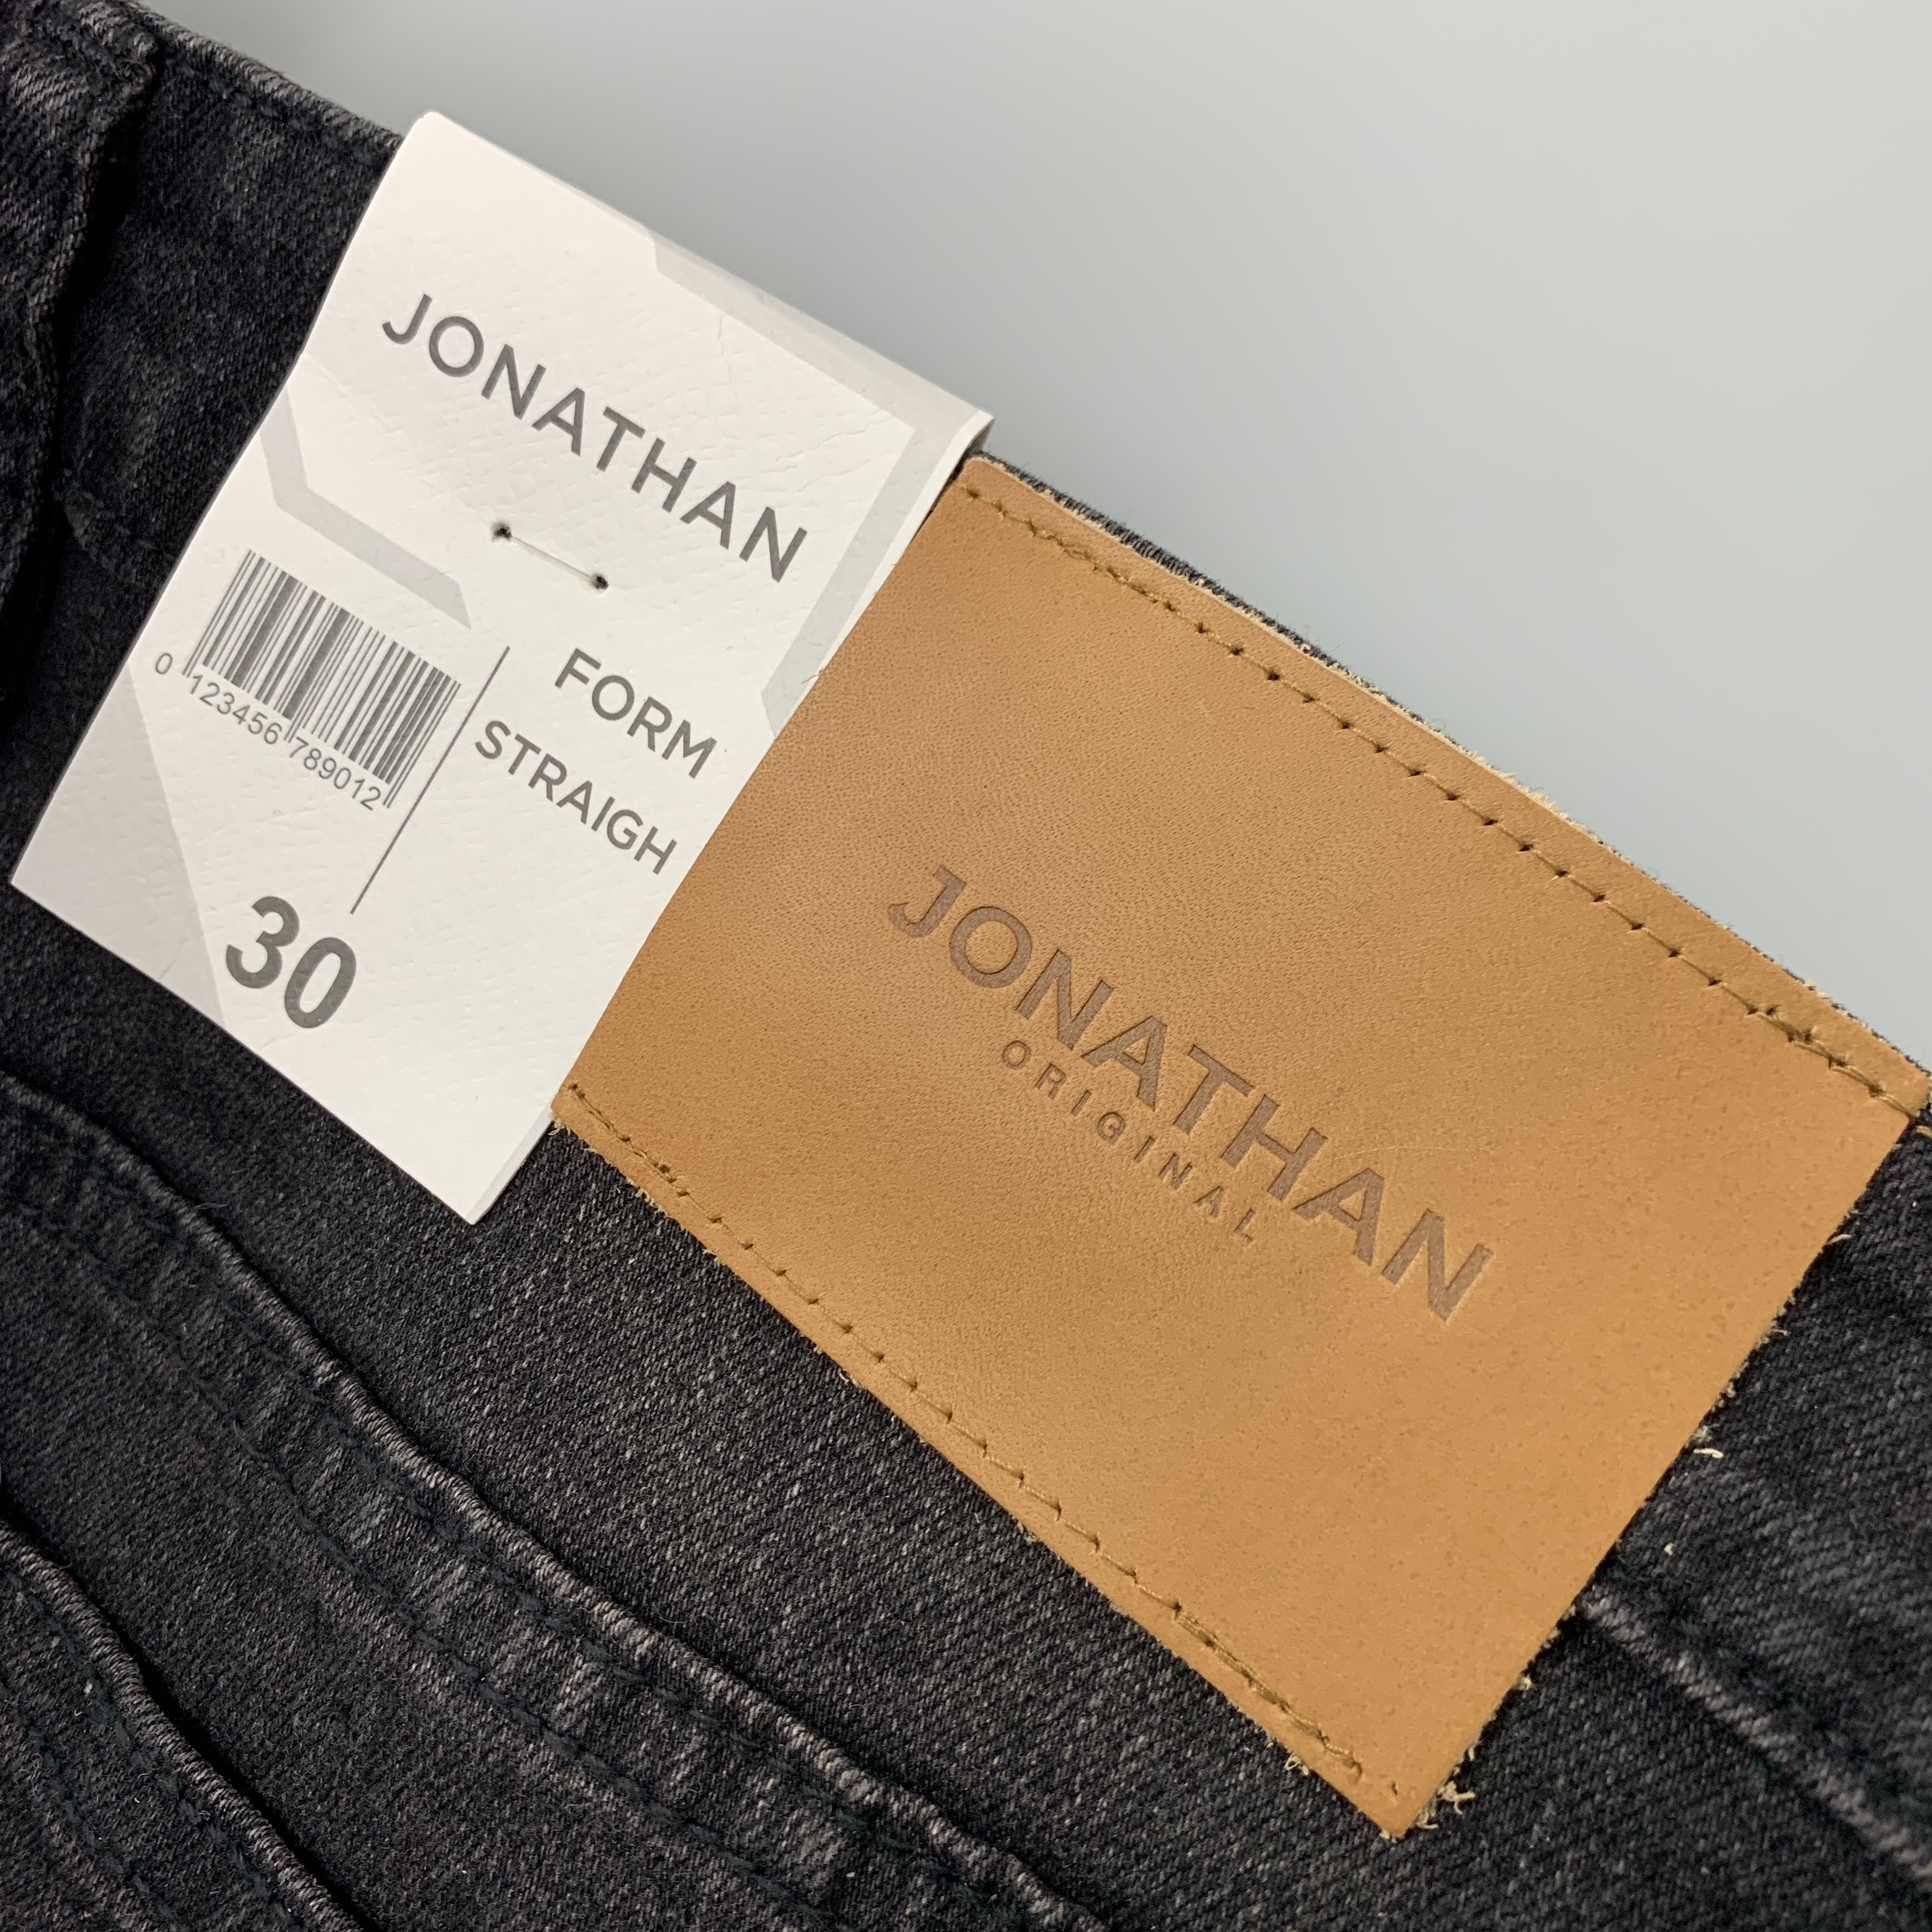 Quần jean nam đen ống suông JONATHAN QJ056 vải denim cao cấp co giãn nhẹ,  form dáng chuẩn đẹp, trẻ trung, hottrend